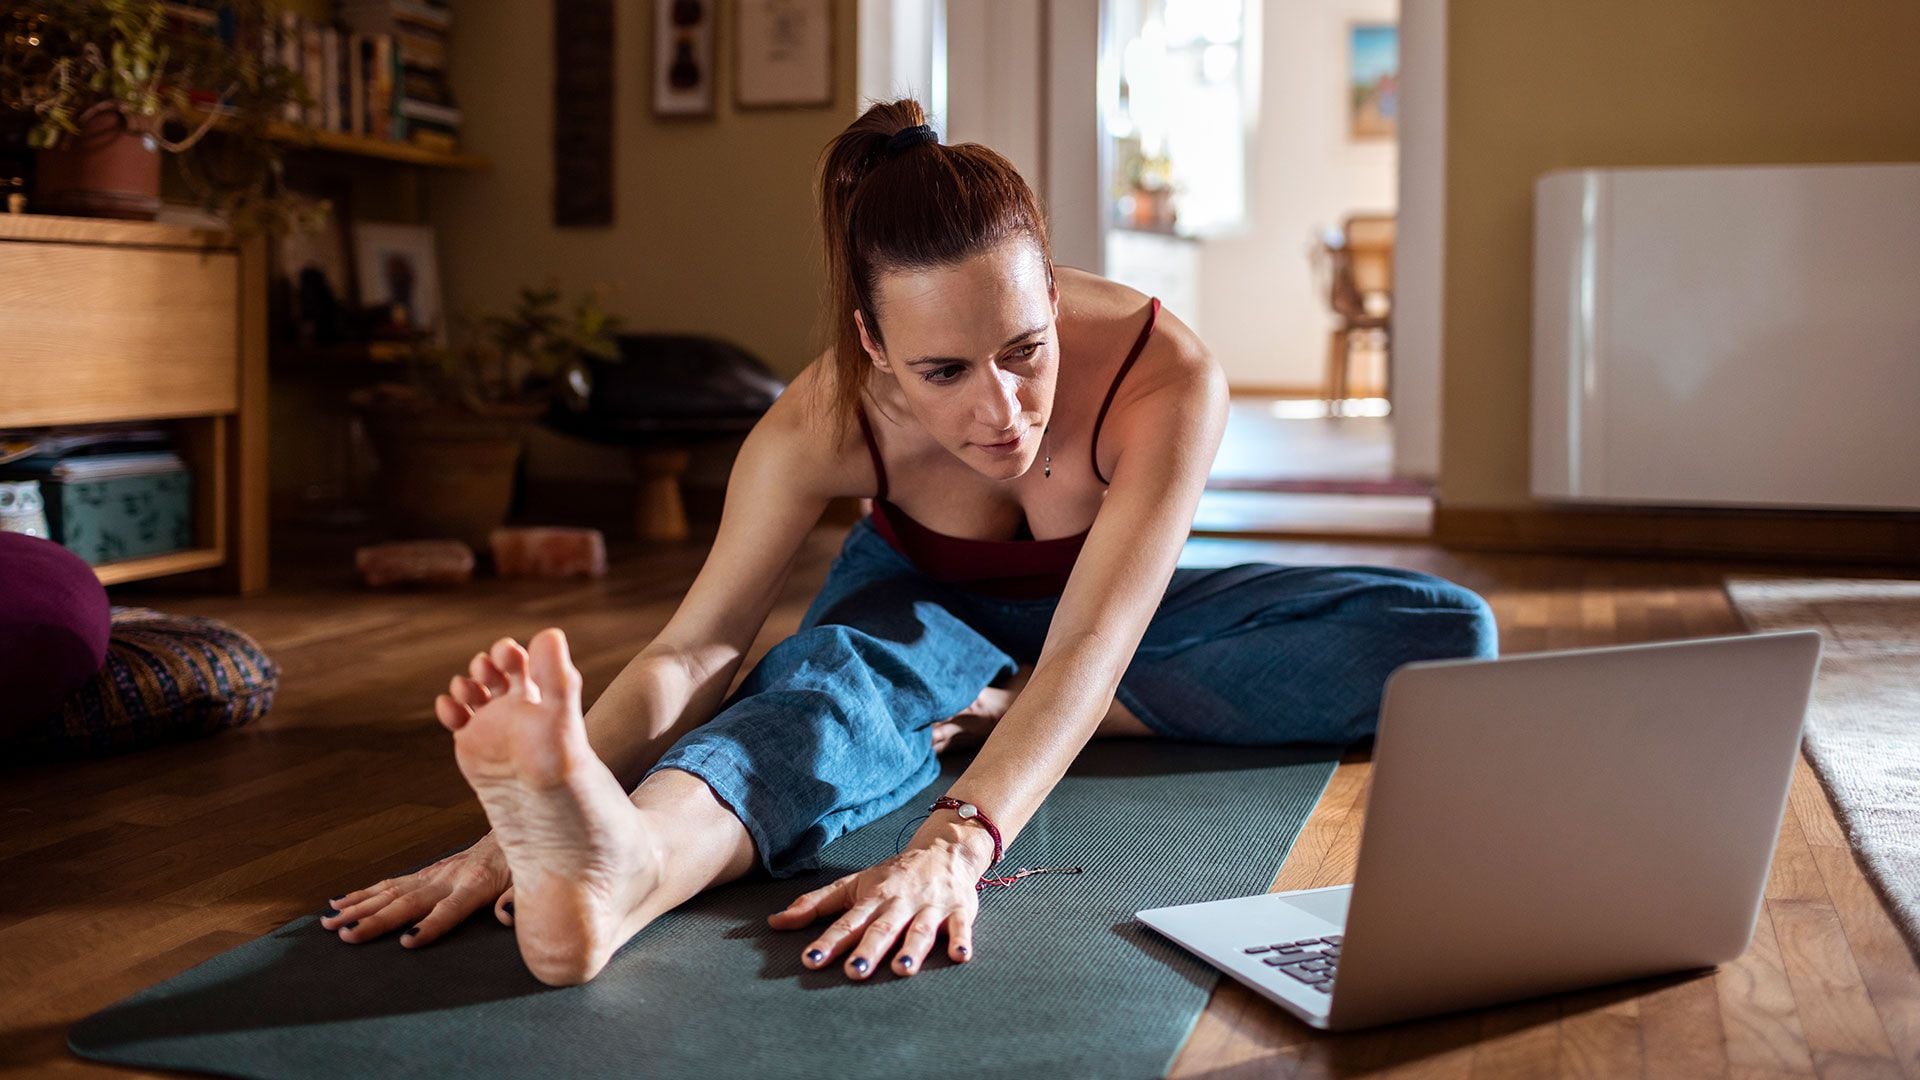 Practicar yoga favorece la relajación y el efecto se puede medir en los niveles de cortisol, una de las hormonas relacionadas con la respuesta de estrés (Getty Images)